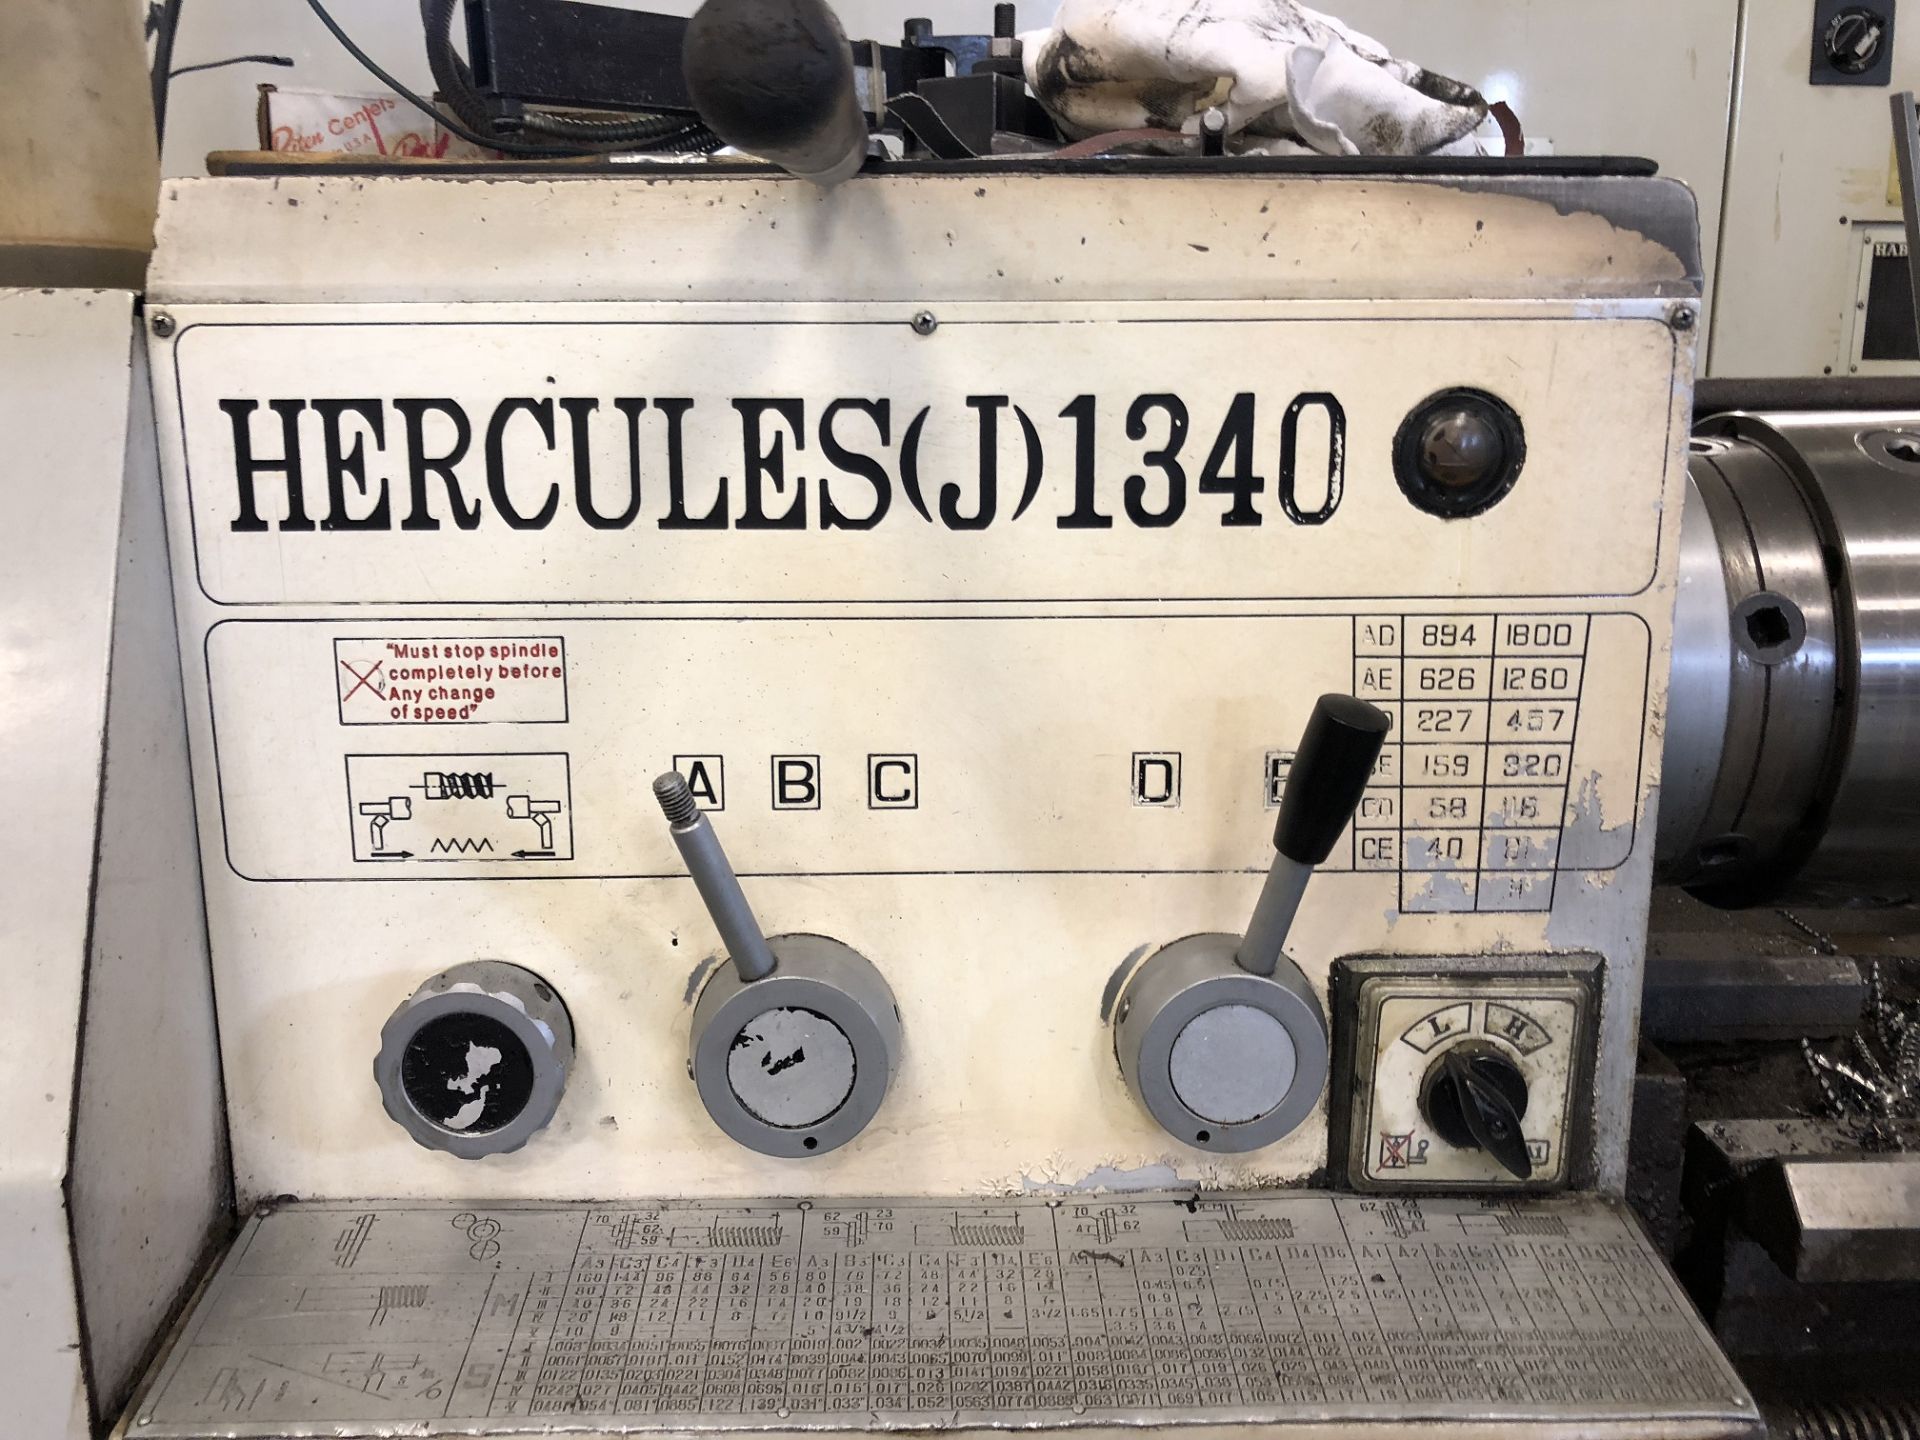 13" x 40" Hercules Engine Lathe - Image 2 of 2